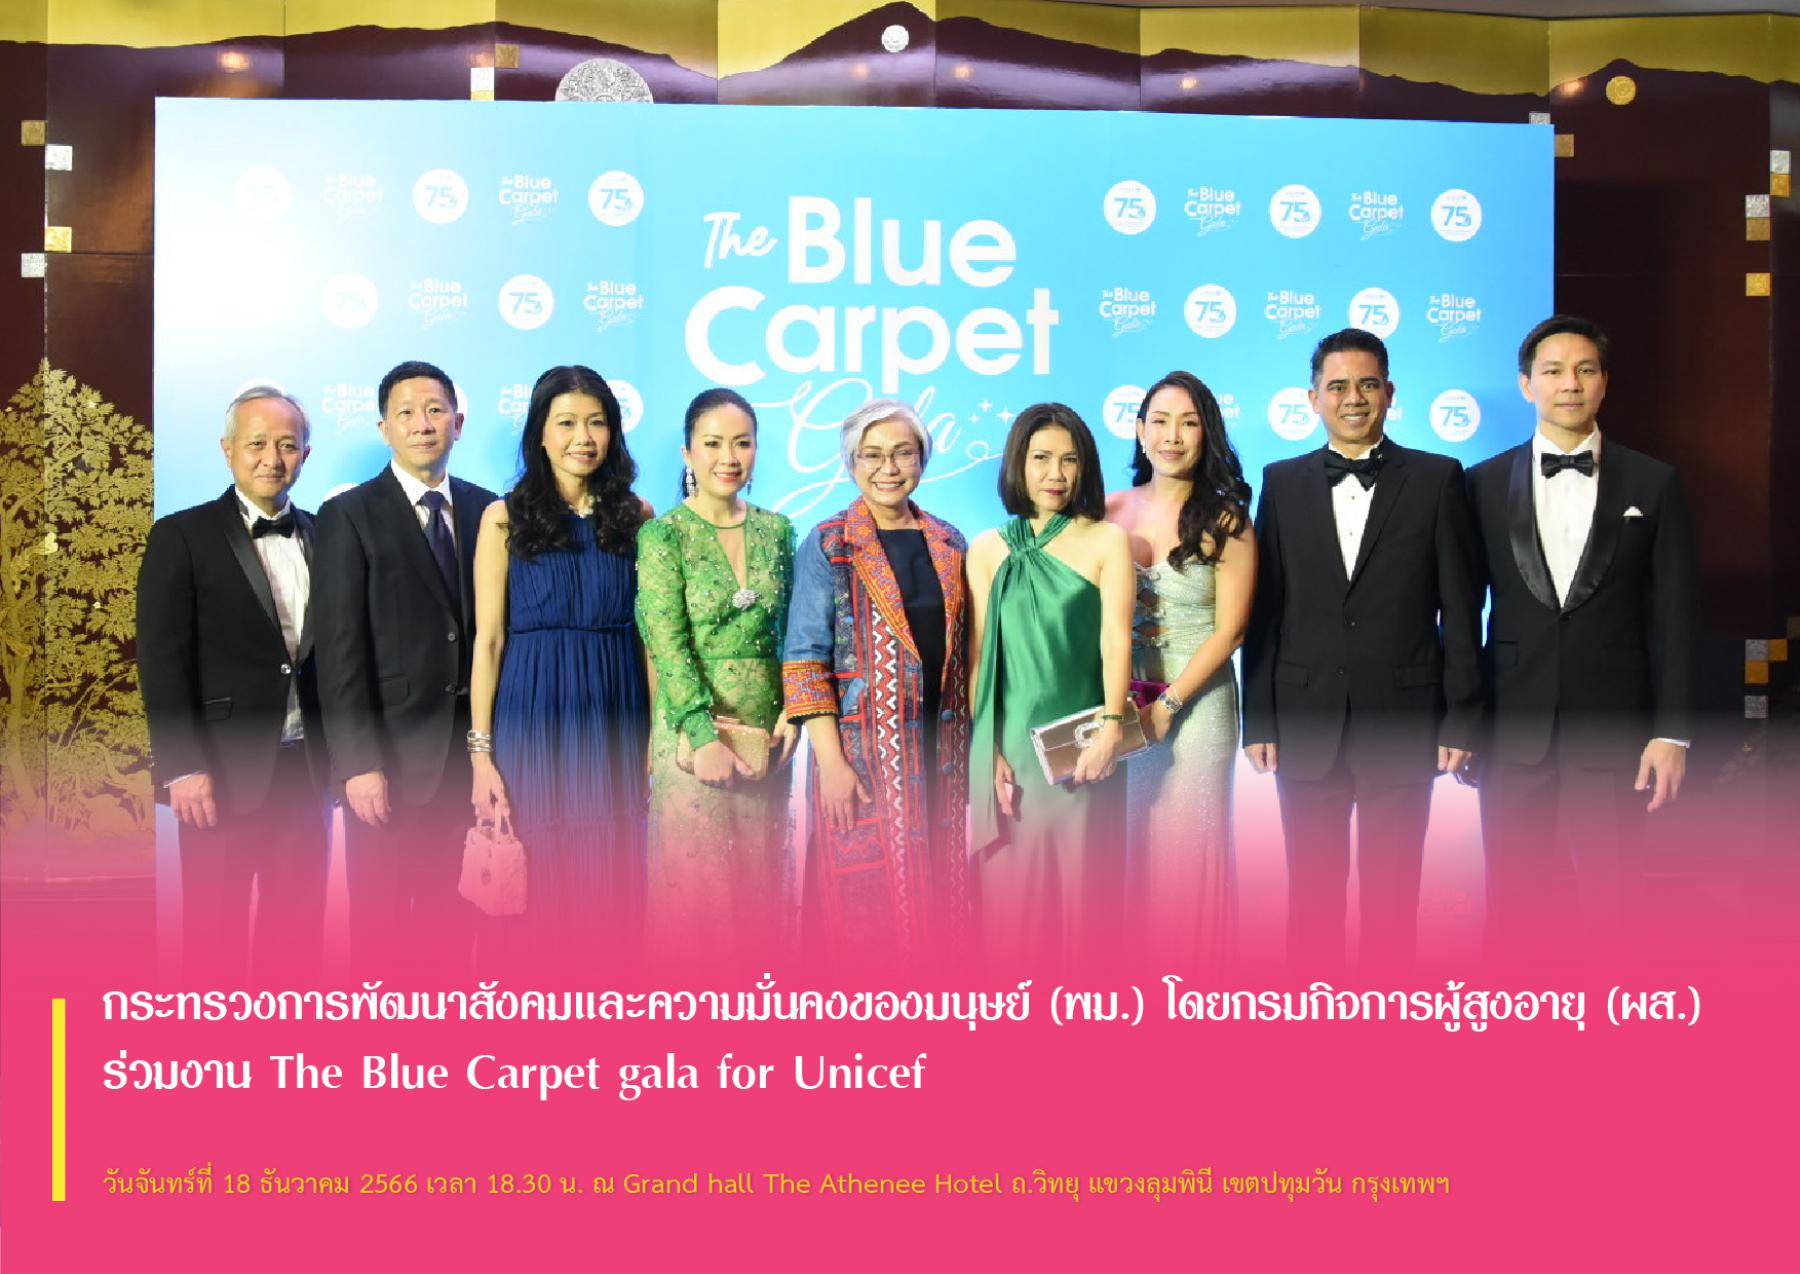 กระทรวงการพัฒนาสังคมและความมั่นคงของมนุษย์ (พม.) โดยกรมกิจการผู้สูงอายุ (ผส.) ร่วมงาน The Blue Carpet gala for Unicef 